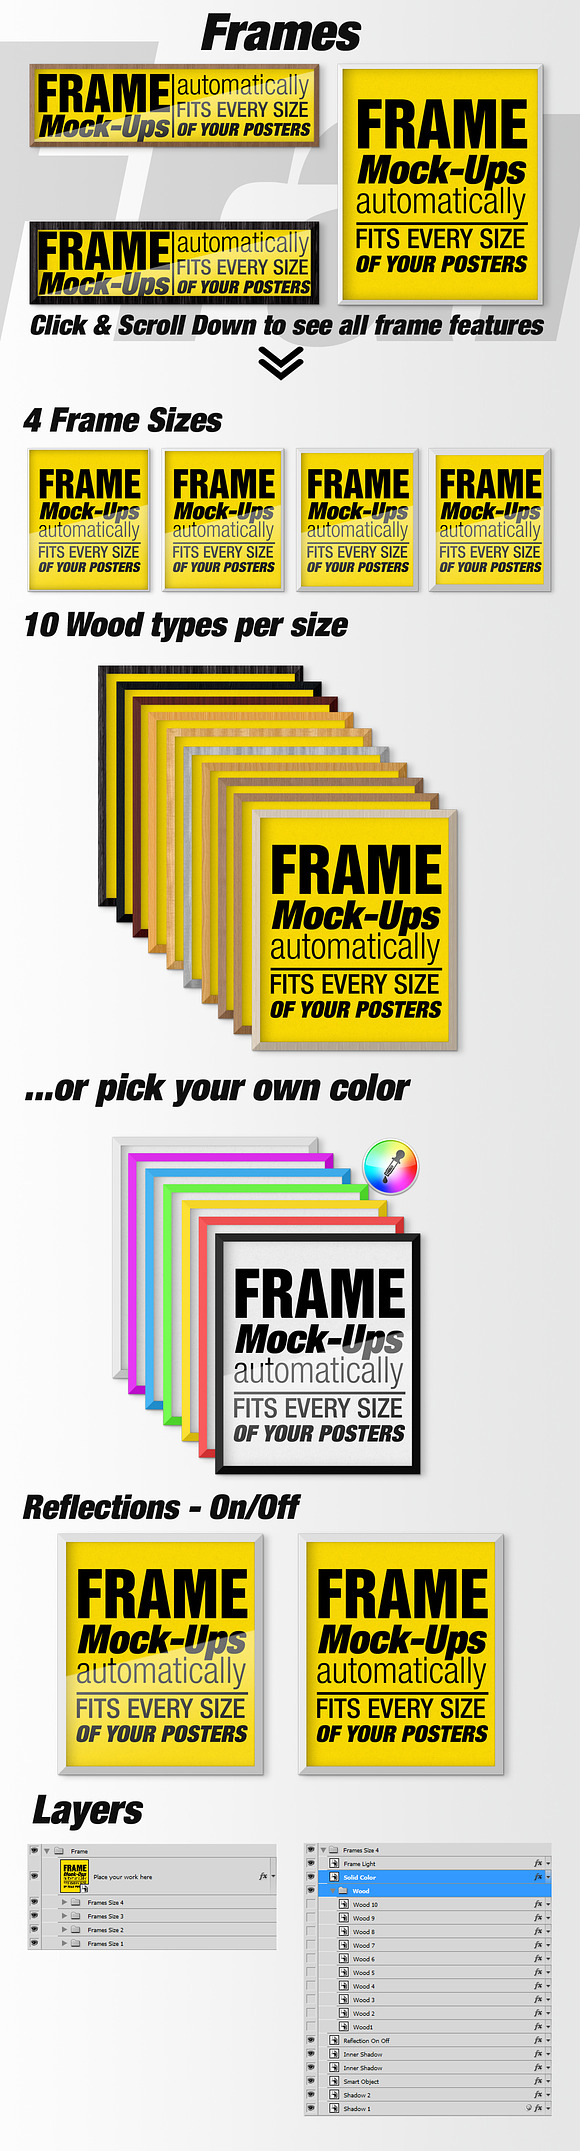 Canvas Mockups - Frames Mockups v 54 in Print Mockups - product preview 6